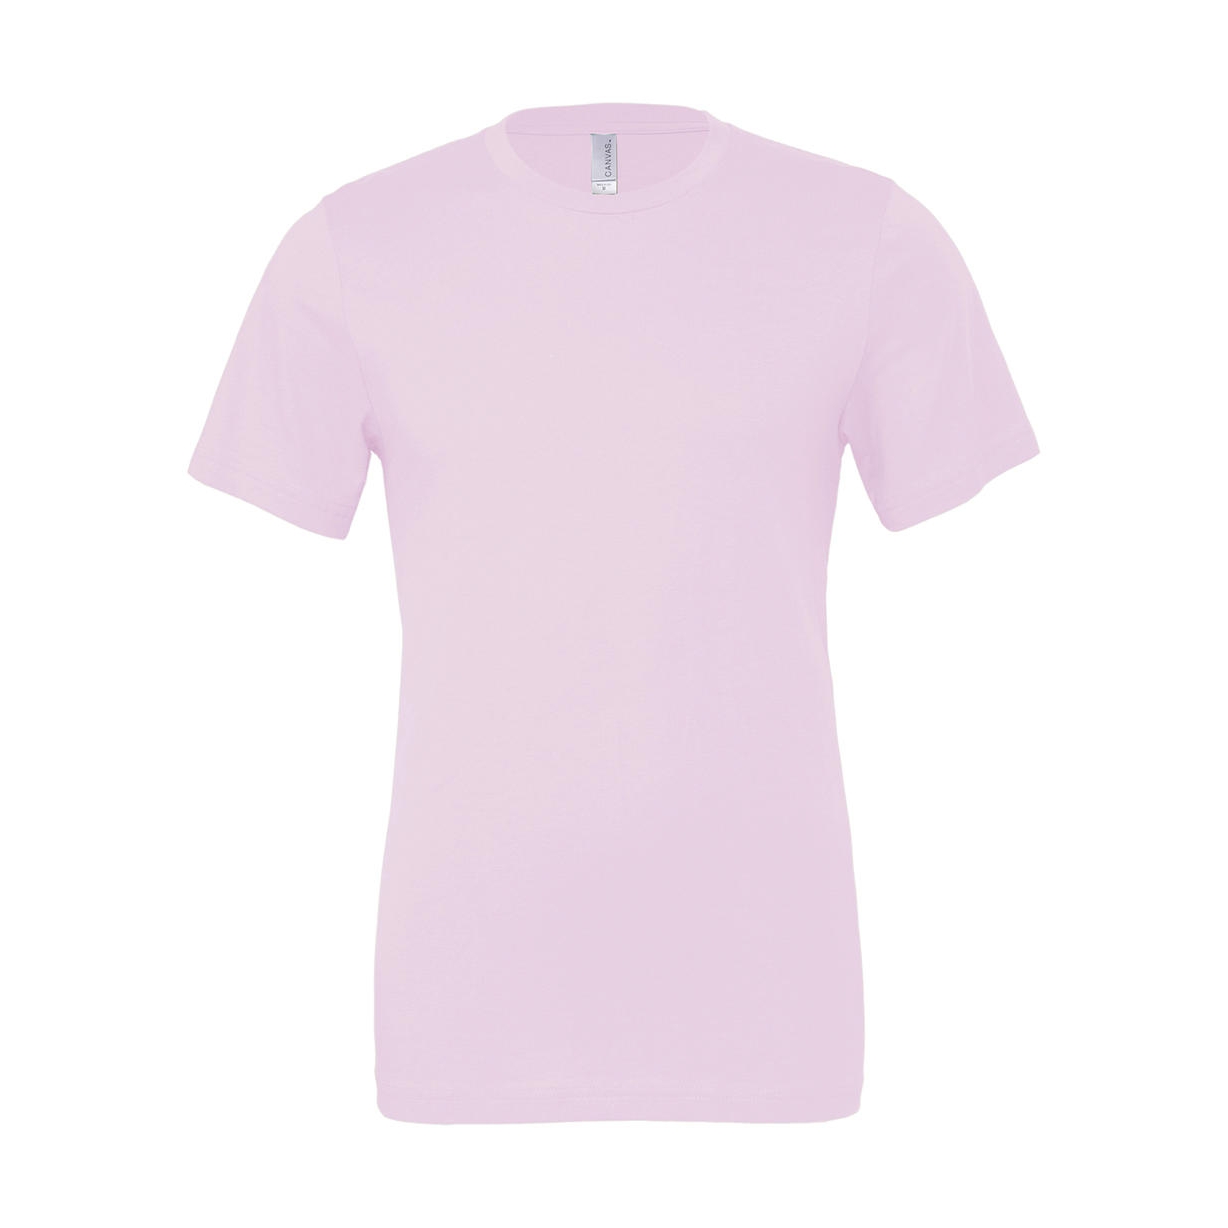 Tričko Bella Jersey - světle růžové, L